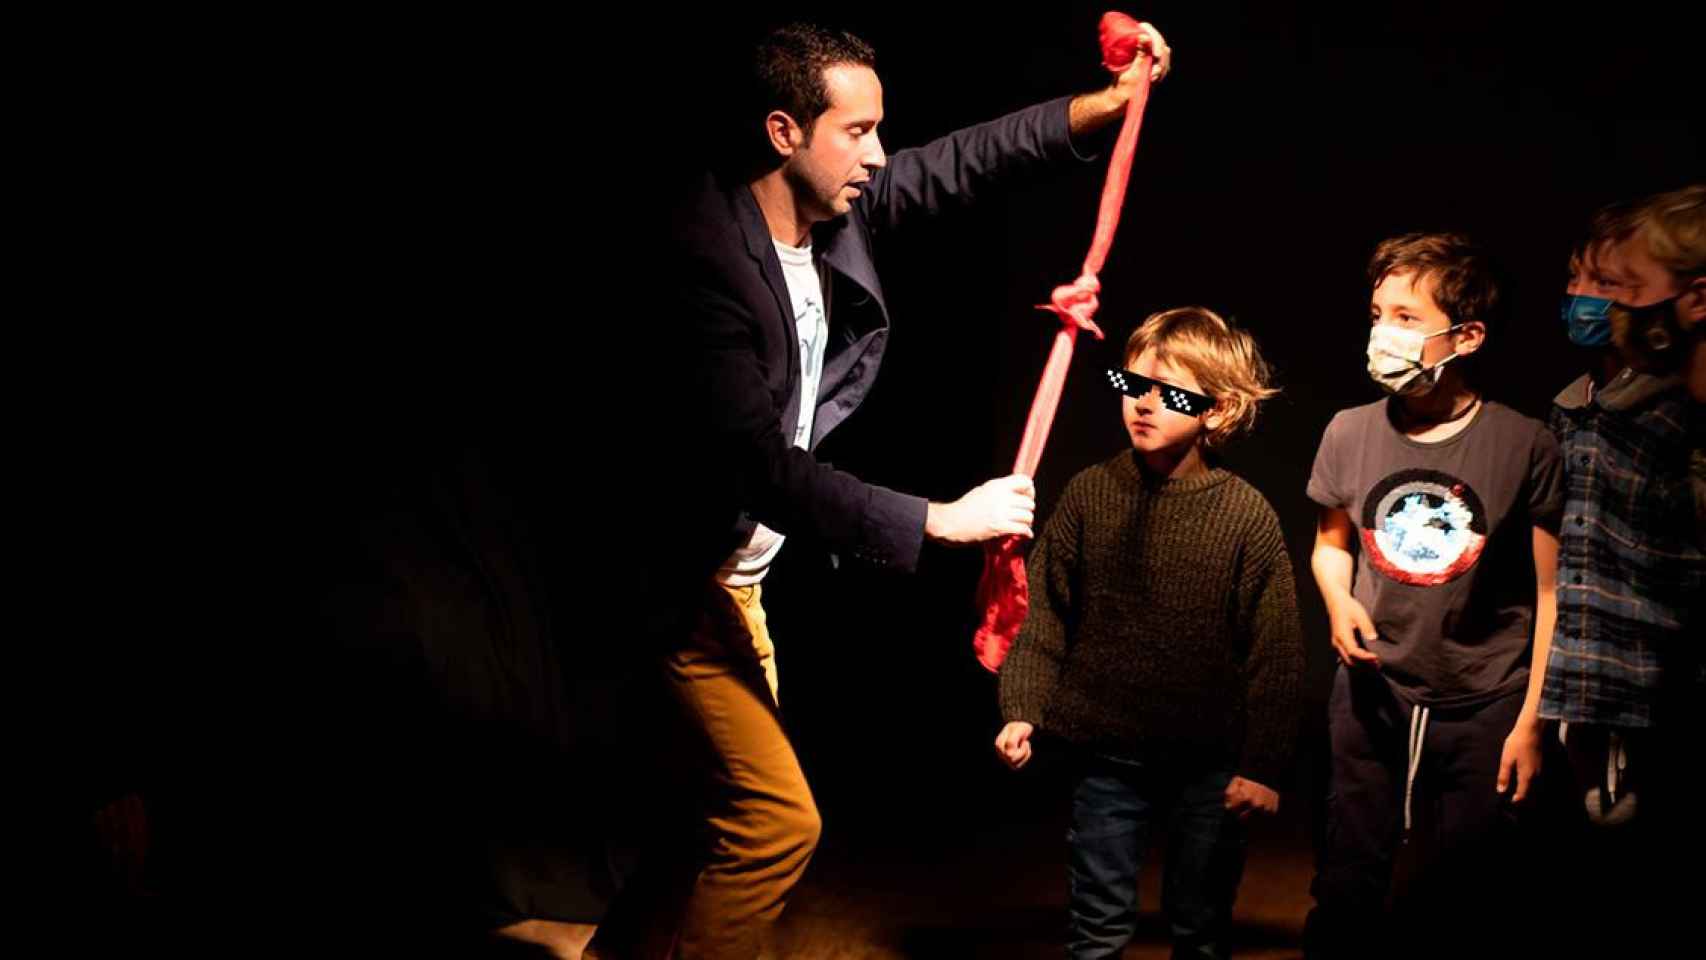 Rémy Marvely, el mago francés afincado en Barcelona durante una actuación con niños / MARVELY